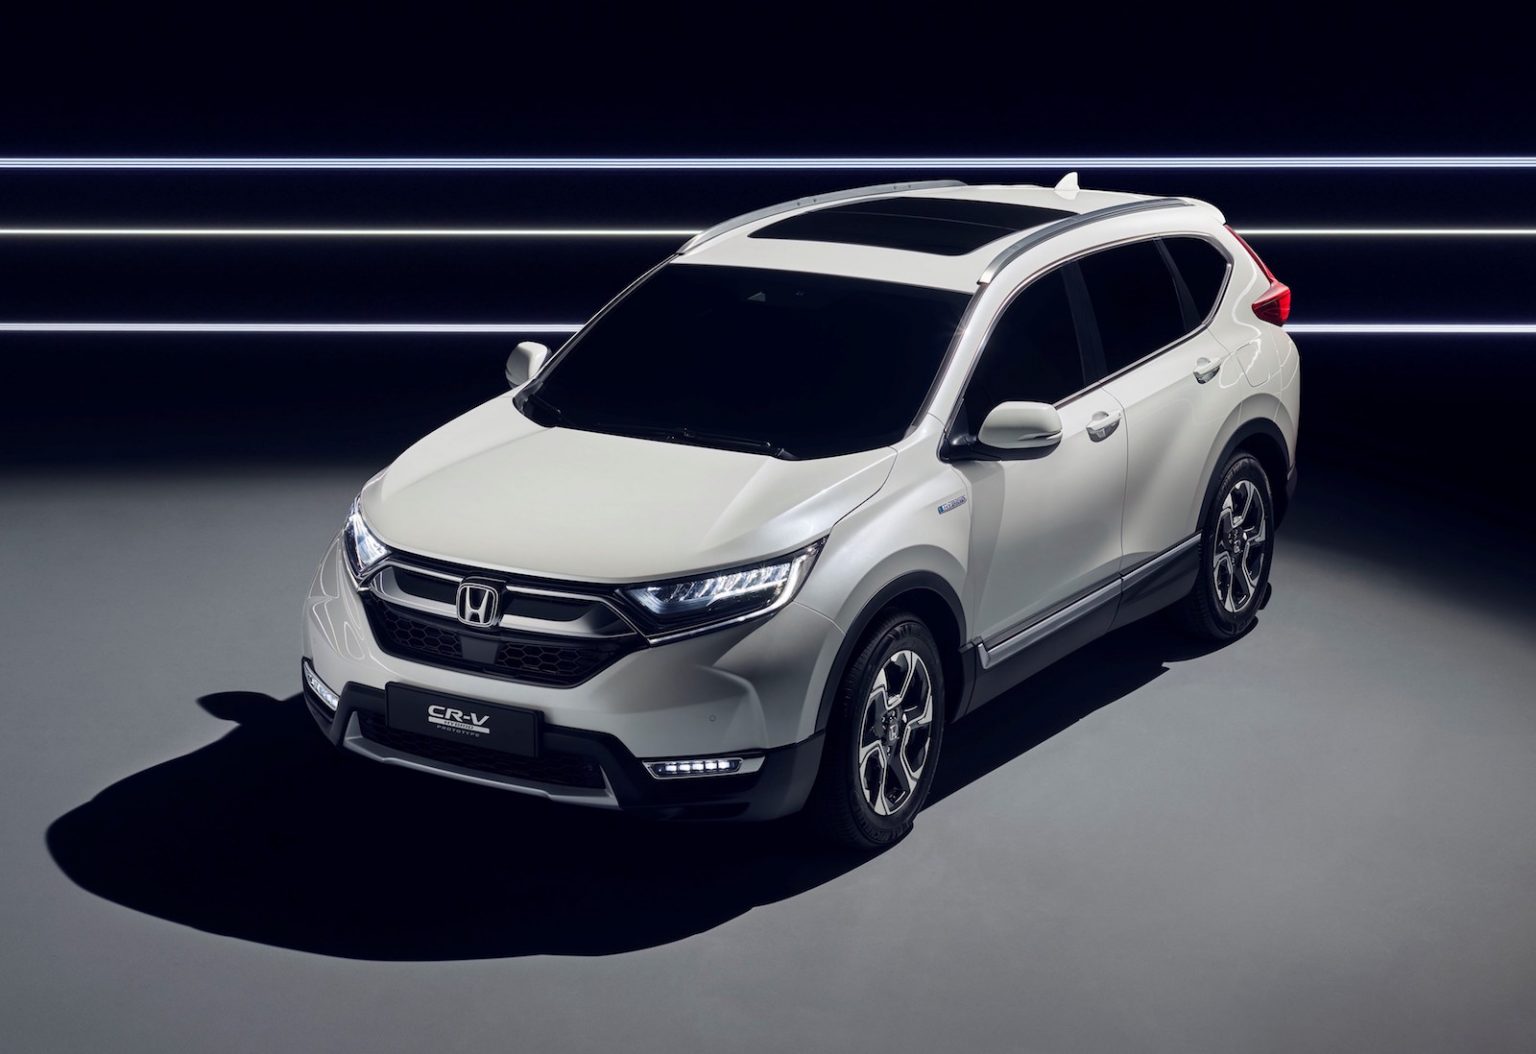 Honda CRV Hybrid Prototype revealed, on sale in Europe next year